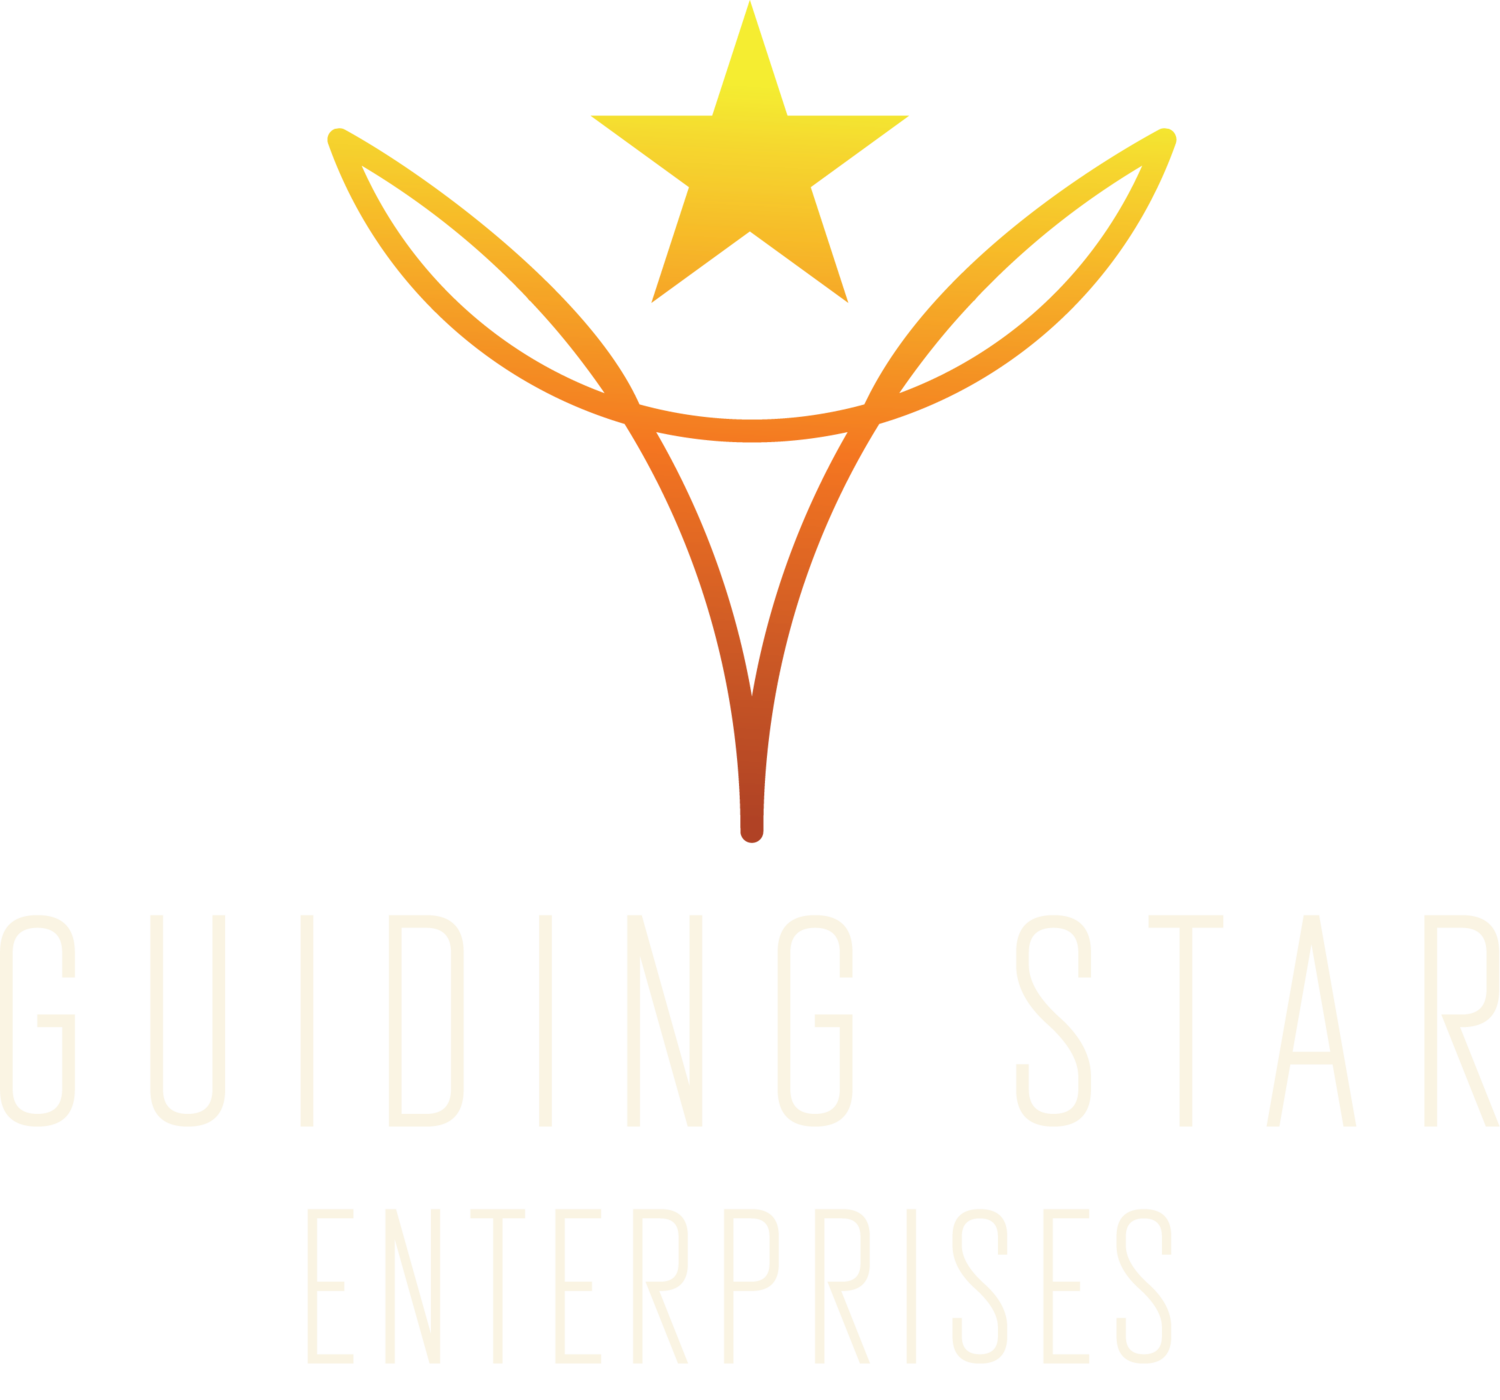 GUIDING STAR ENTERPRISES